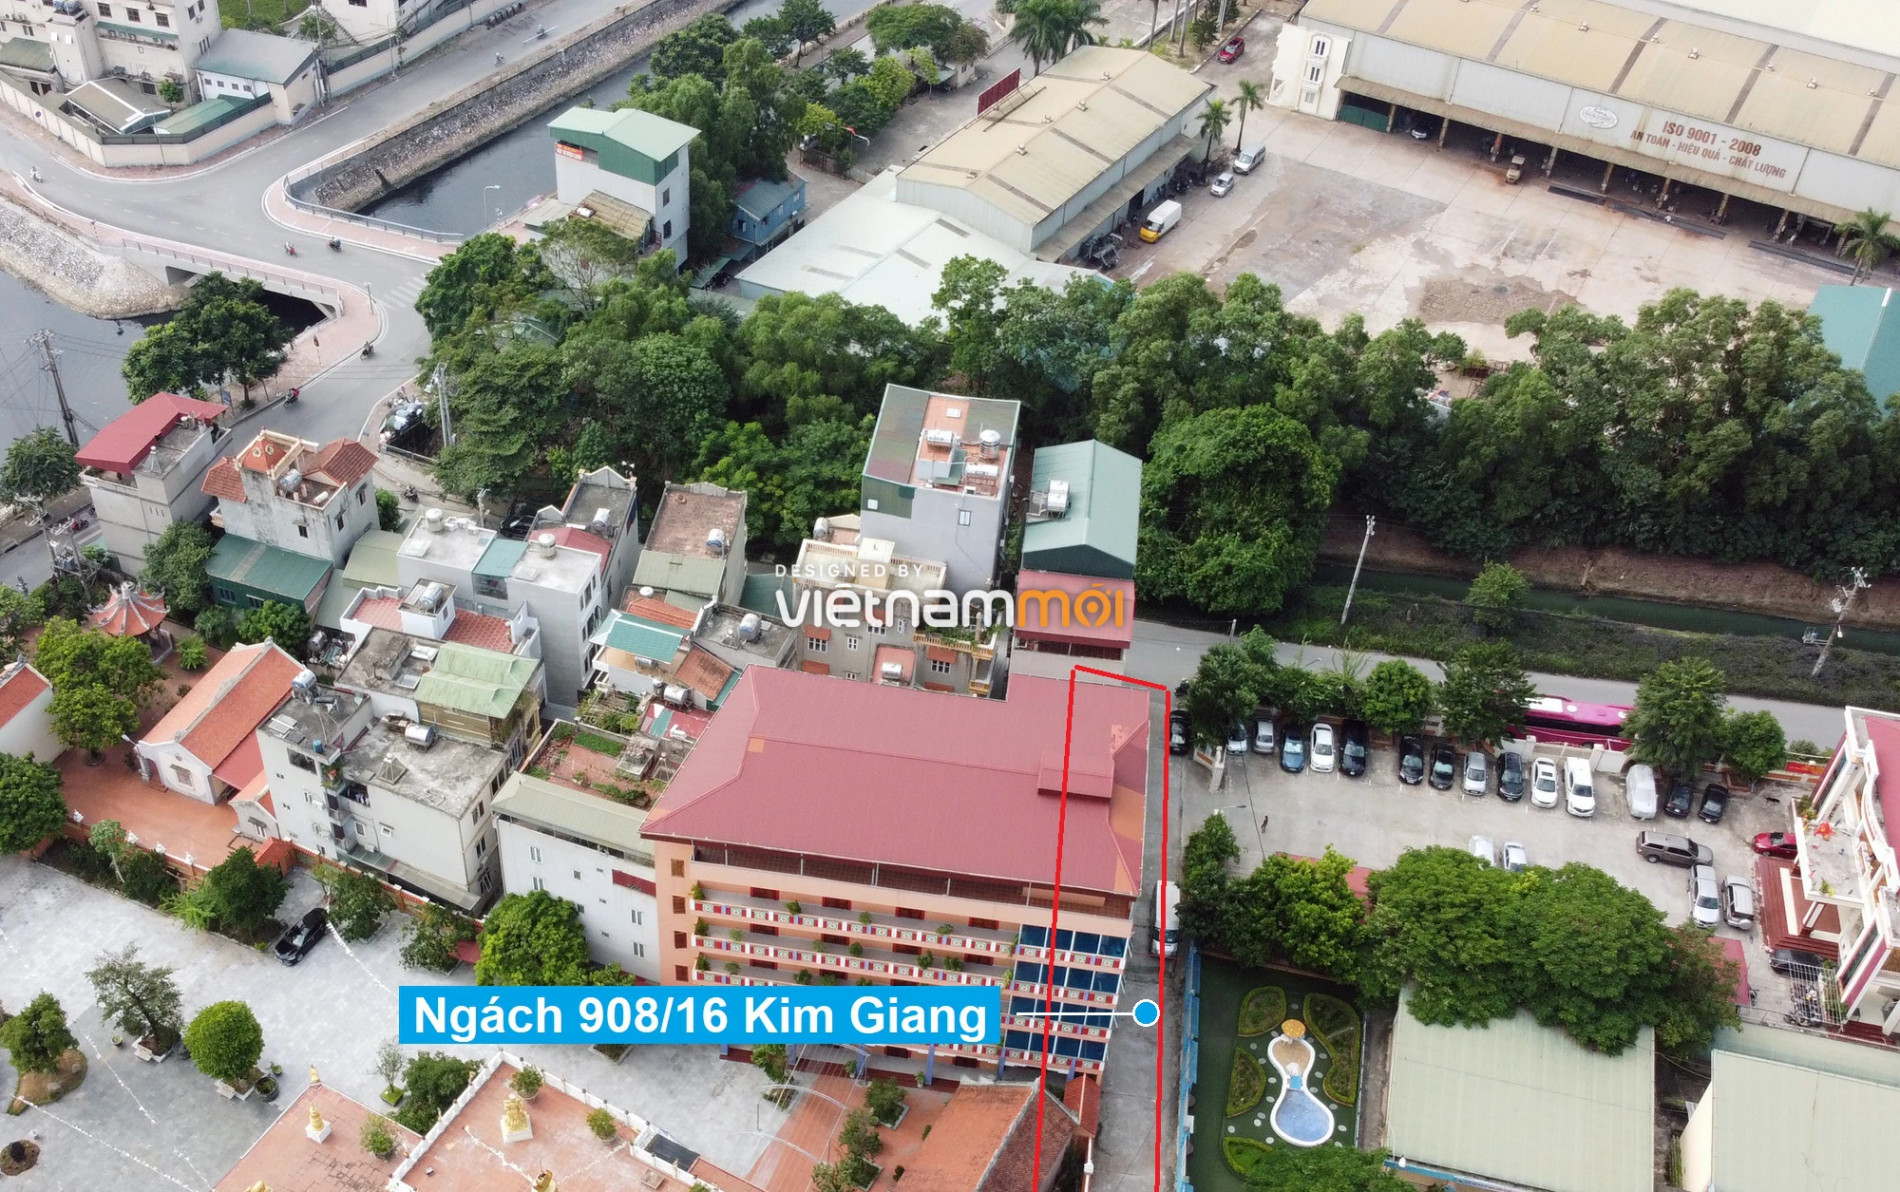 Những khu đất sắp thu hồi để mở đường ở xã Thanh Liệt, Thanh Trì, Hà Nội (phần 7) - Ảnh 3.